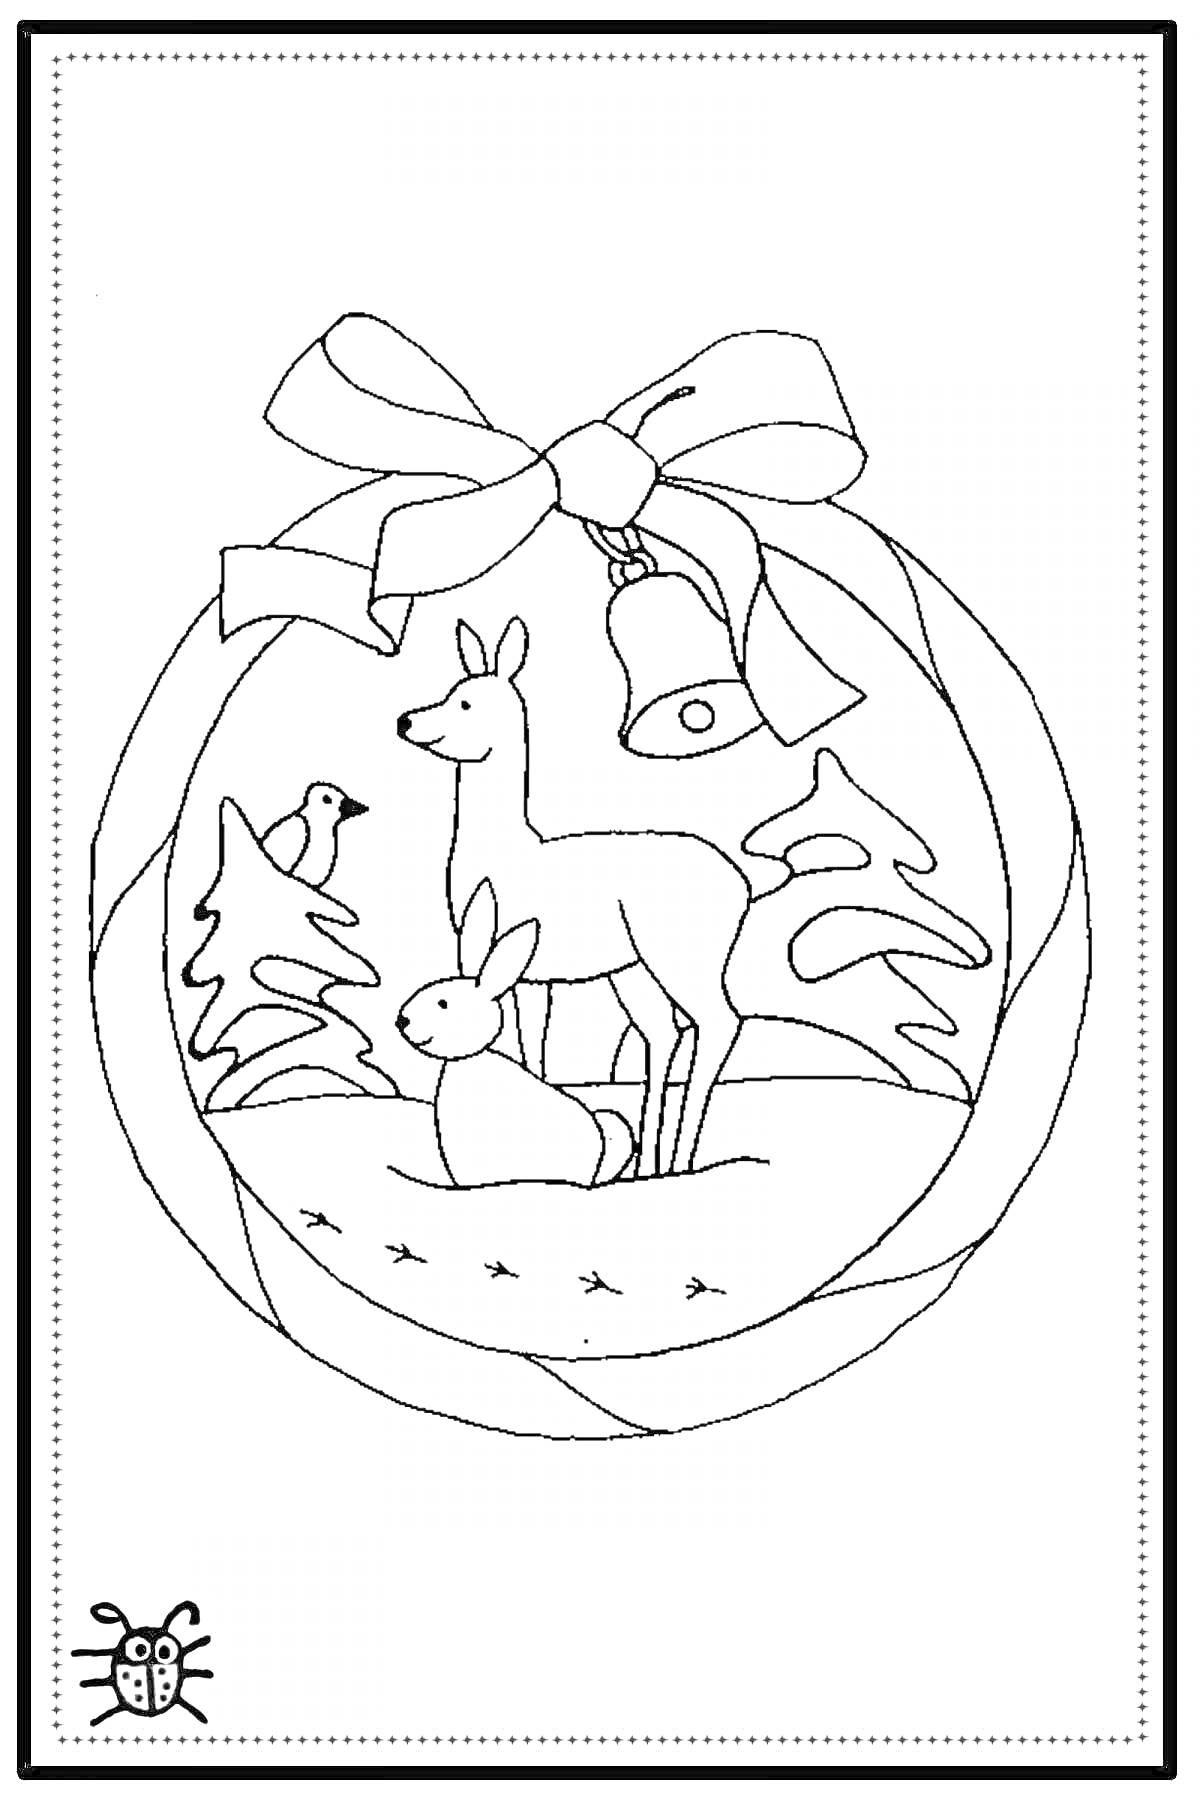 Раскраска Новогодняя игрушка с оленем, зайцем, птицей и колокольчиком